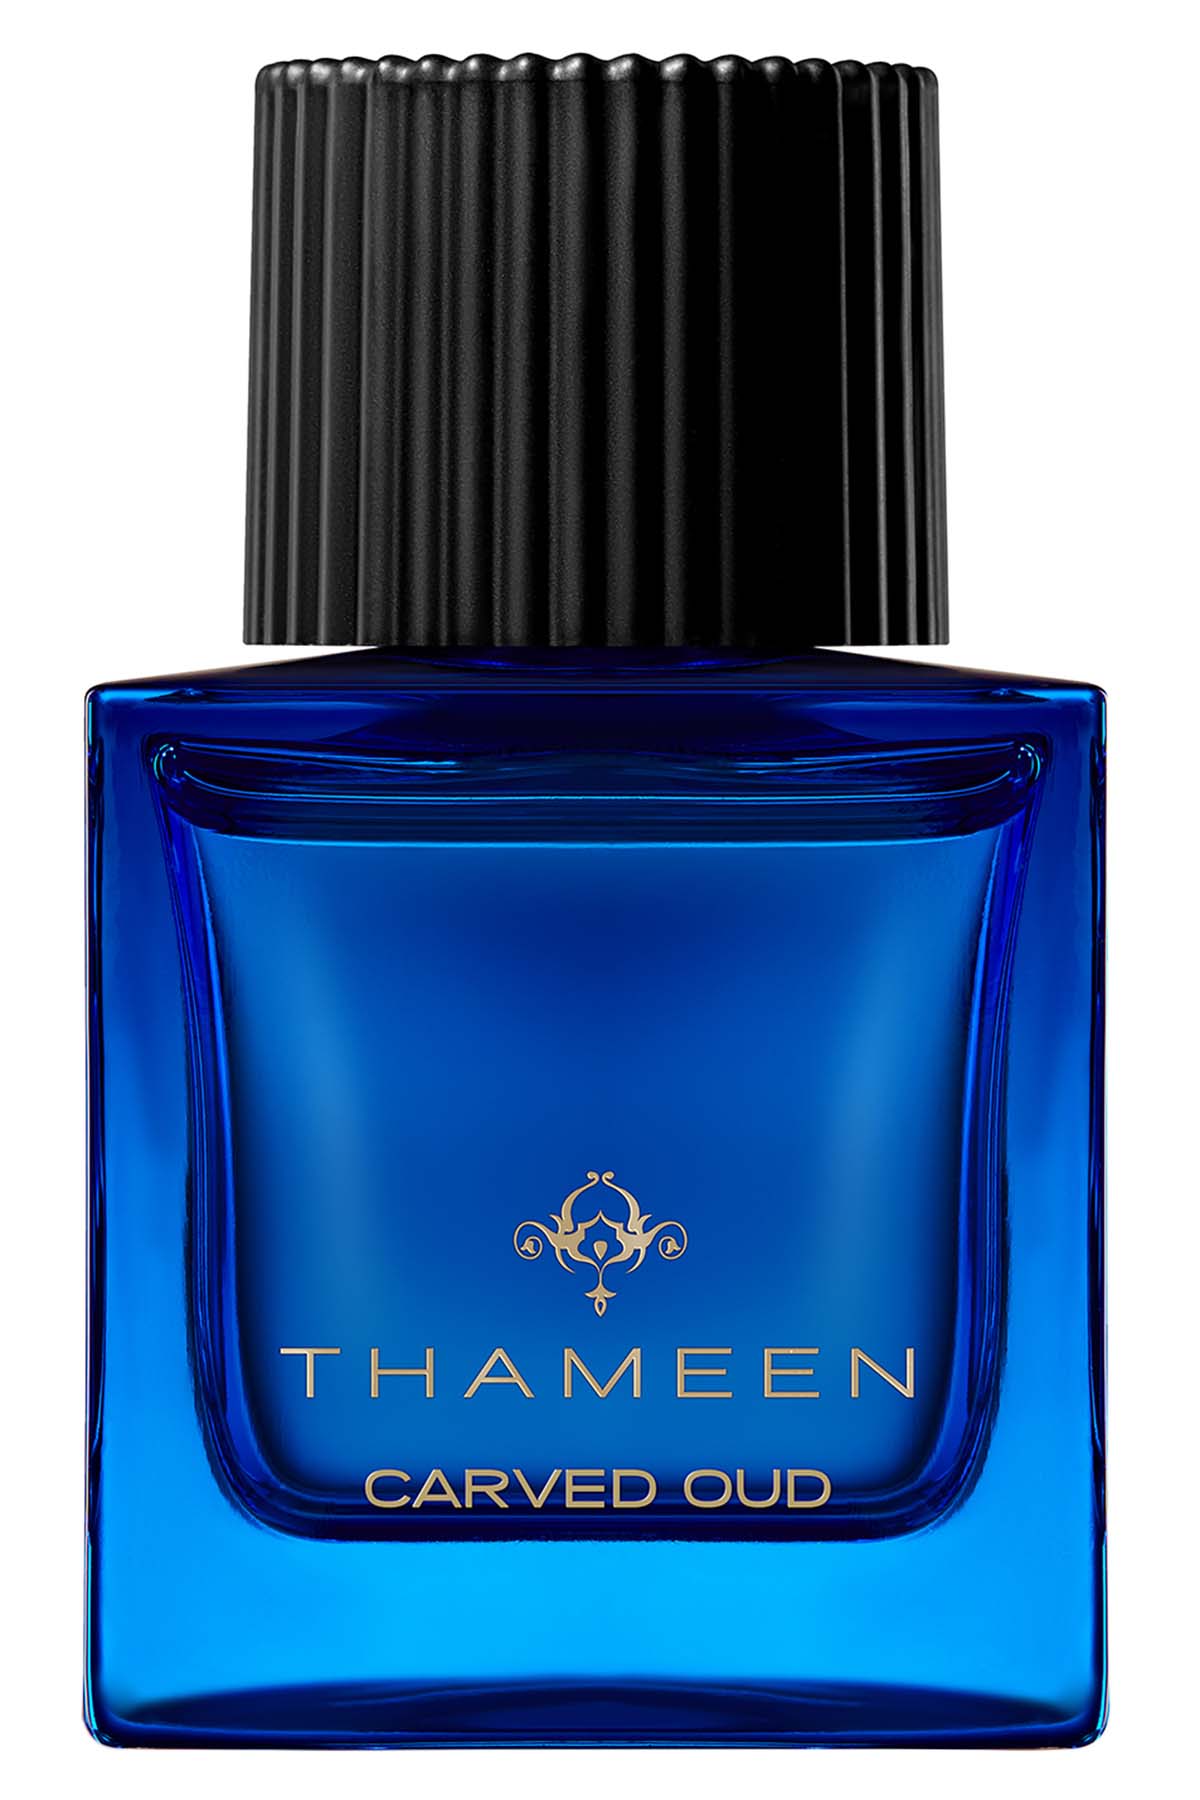 Thameen Carved Oud Extrait de Parfum